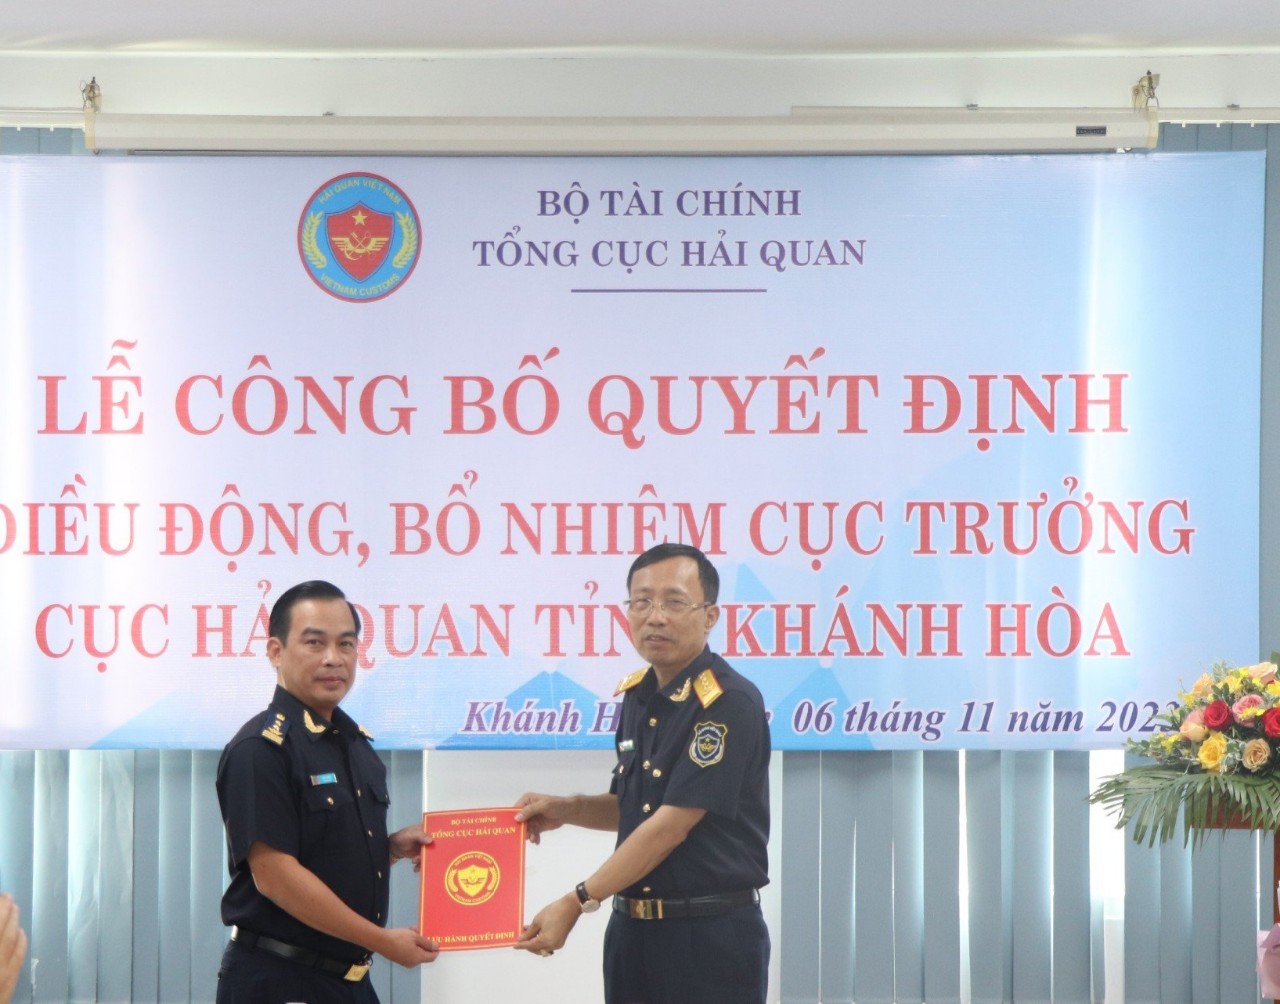 Điều động, bổ nhiệm Cục trưởng Cục Hải quan tỉnh Khánh Hòa  - Ảnh 1.